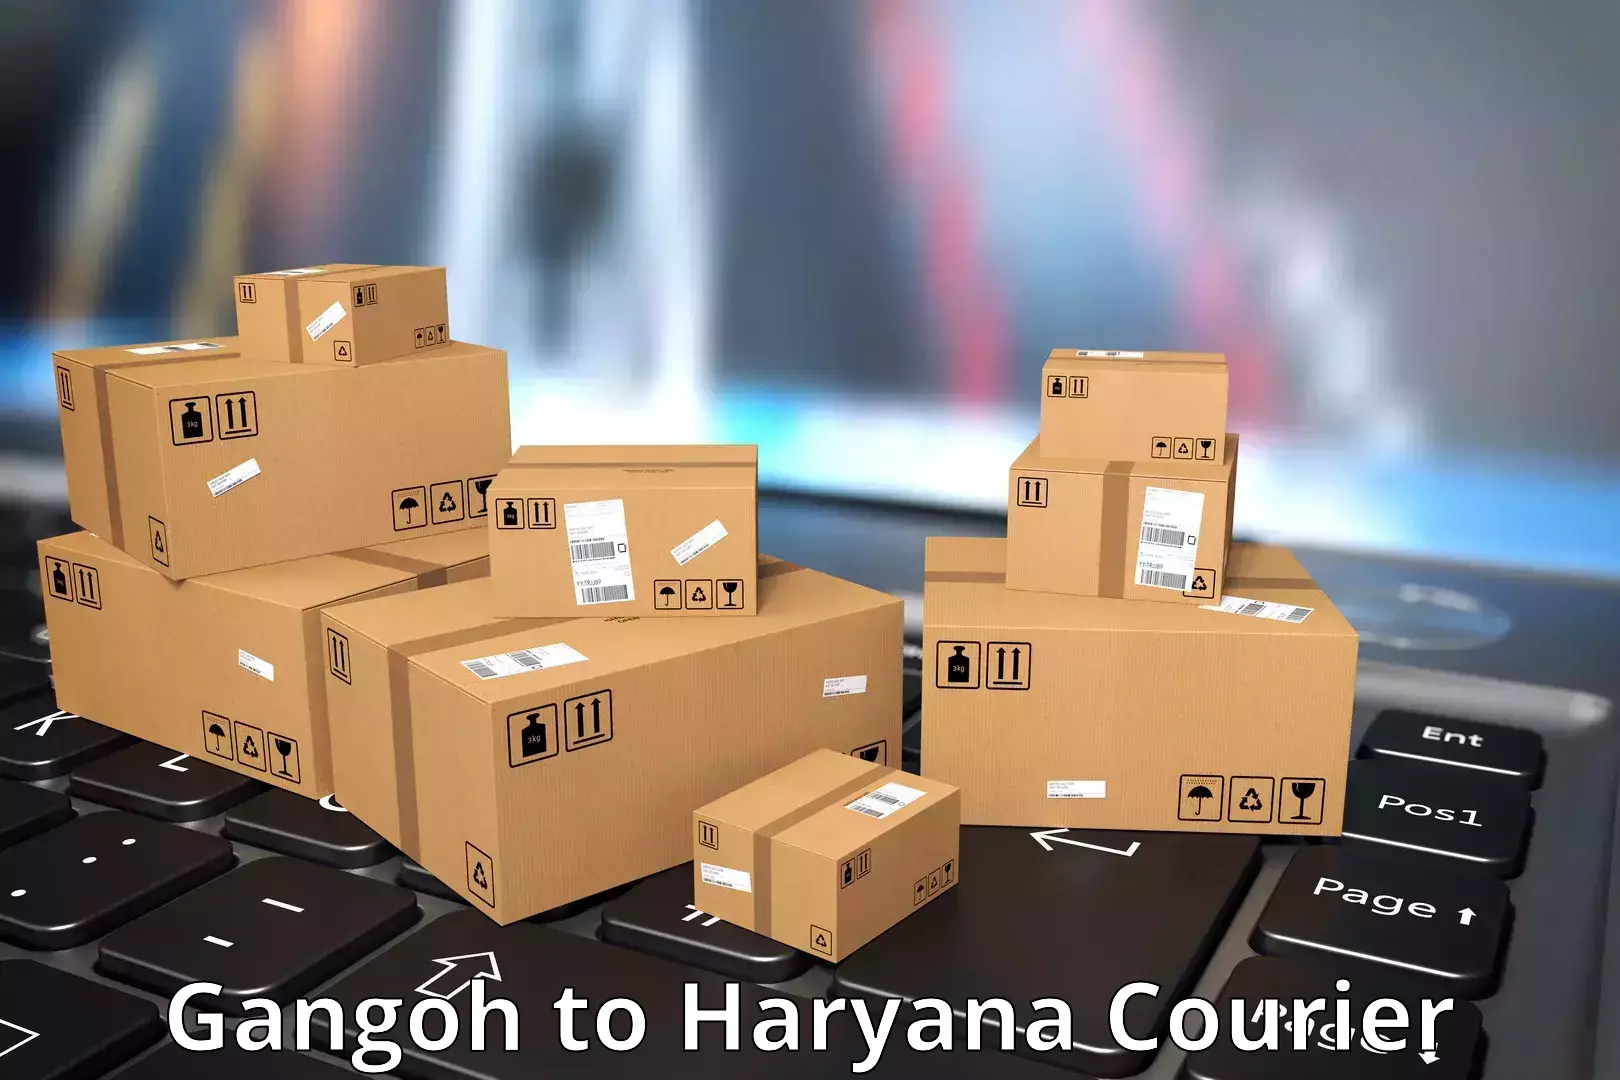 Efficient courier operations Gangoh to IIIT Sonepat